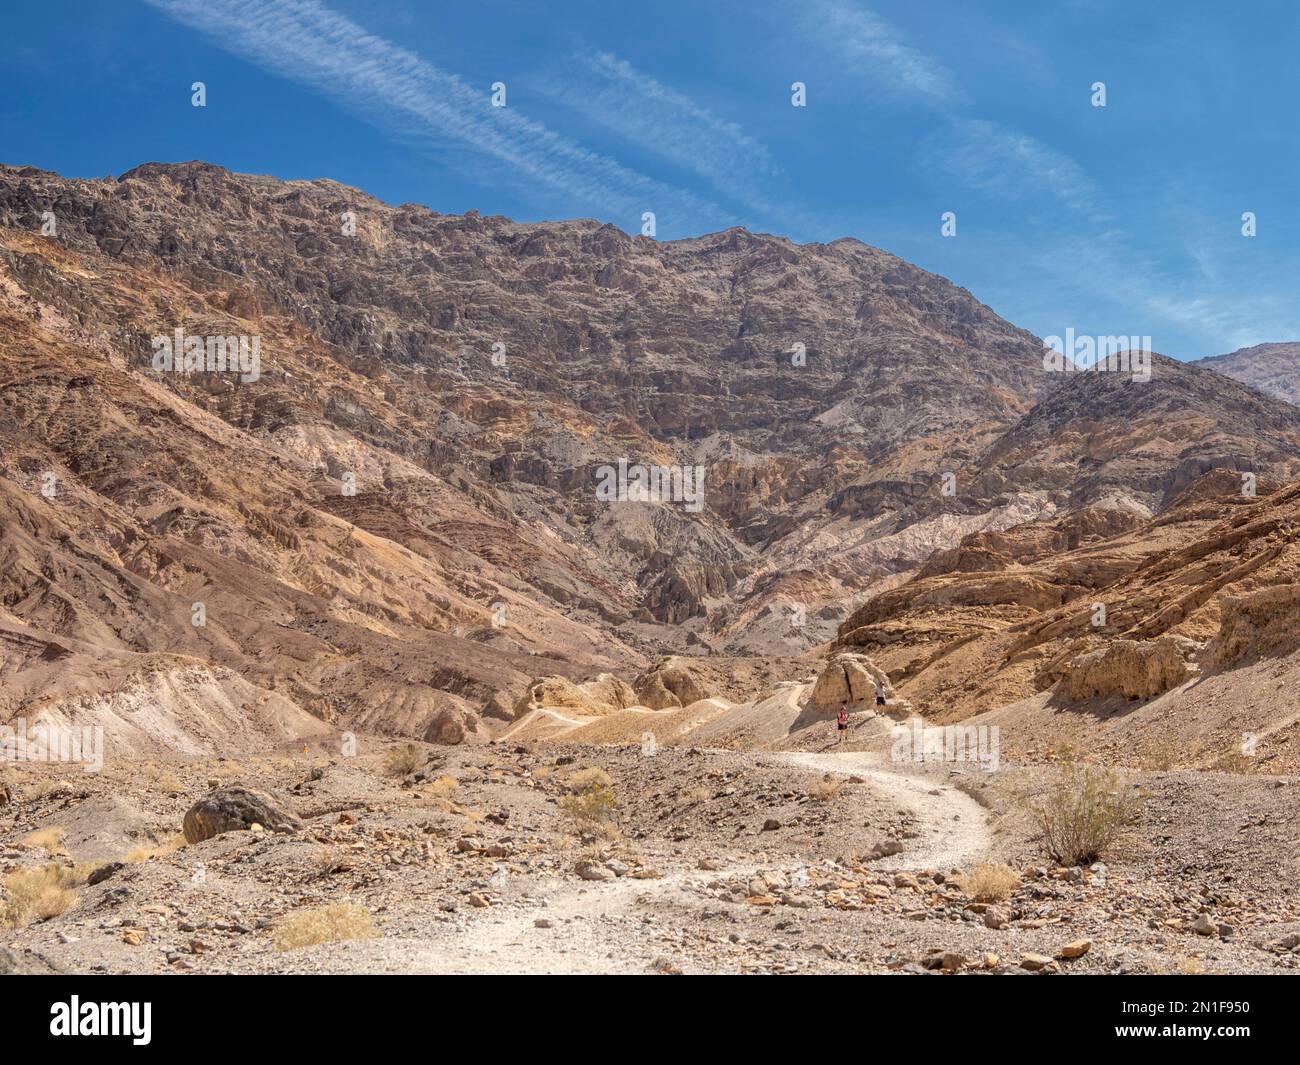 Vue sur la piste du canyon de la mosaïque dans le parc national de la Vallée de la mort, Californie, États-Unis d'Amérique, Amérique du Nord Banque D'Images